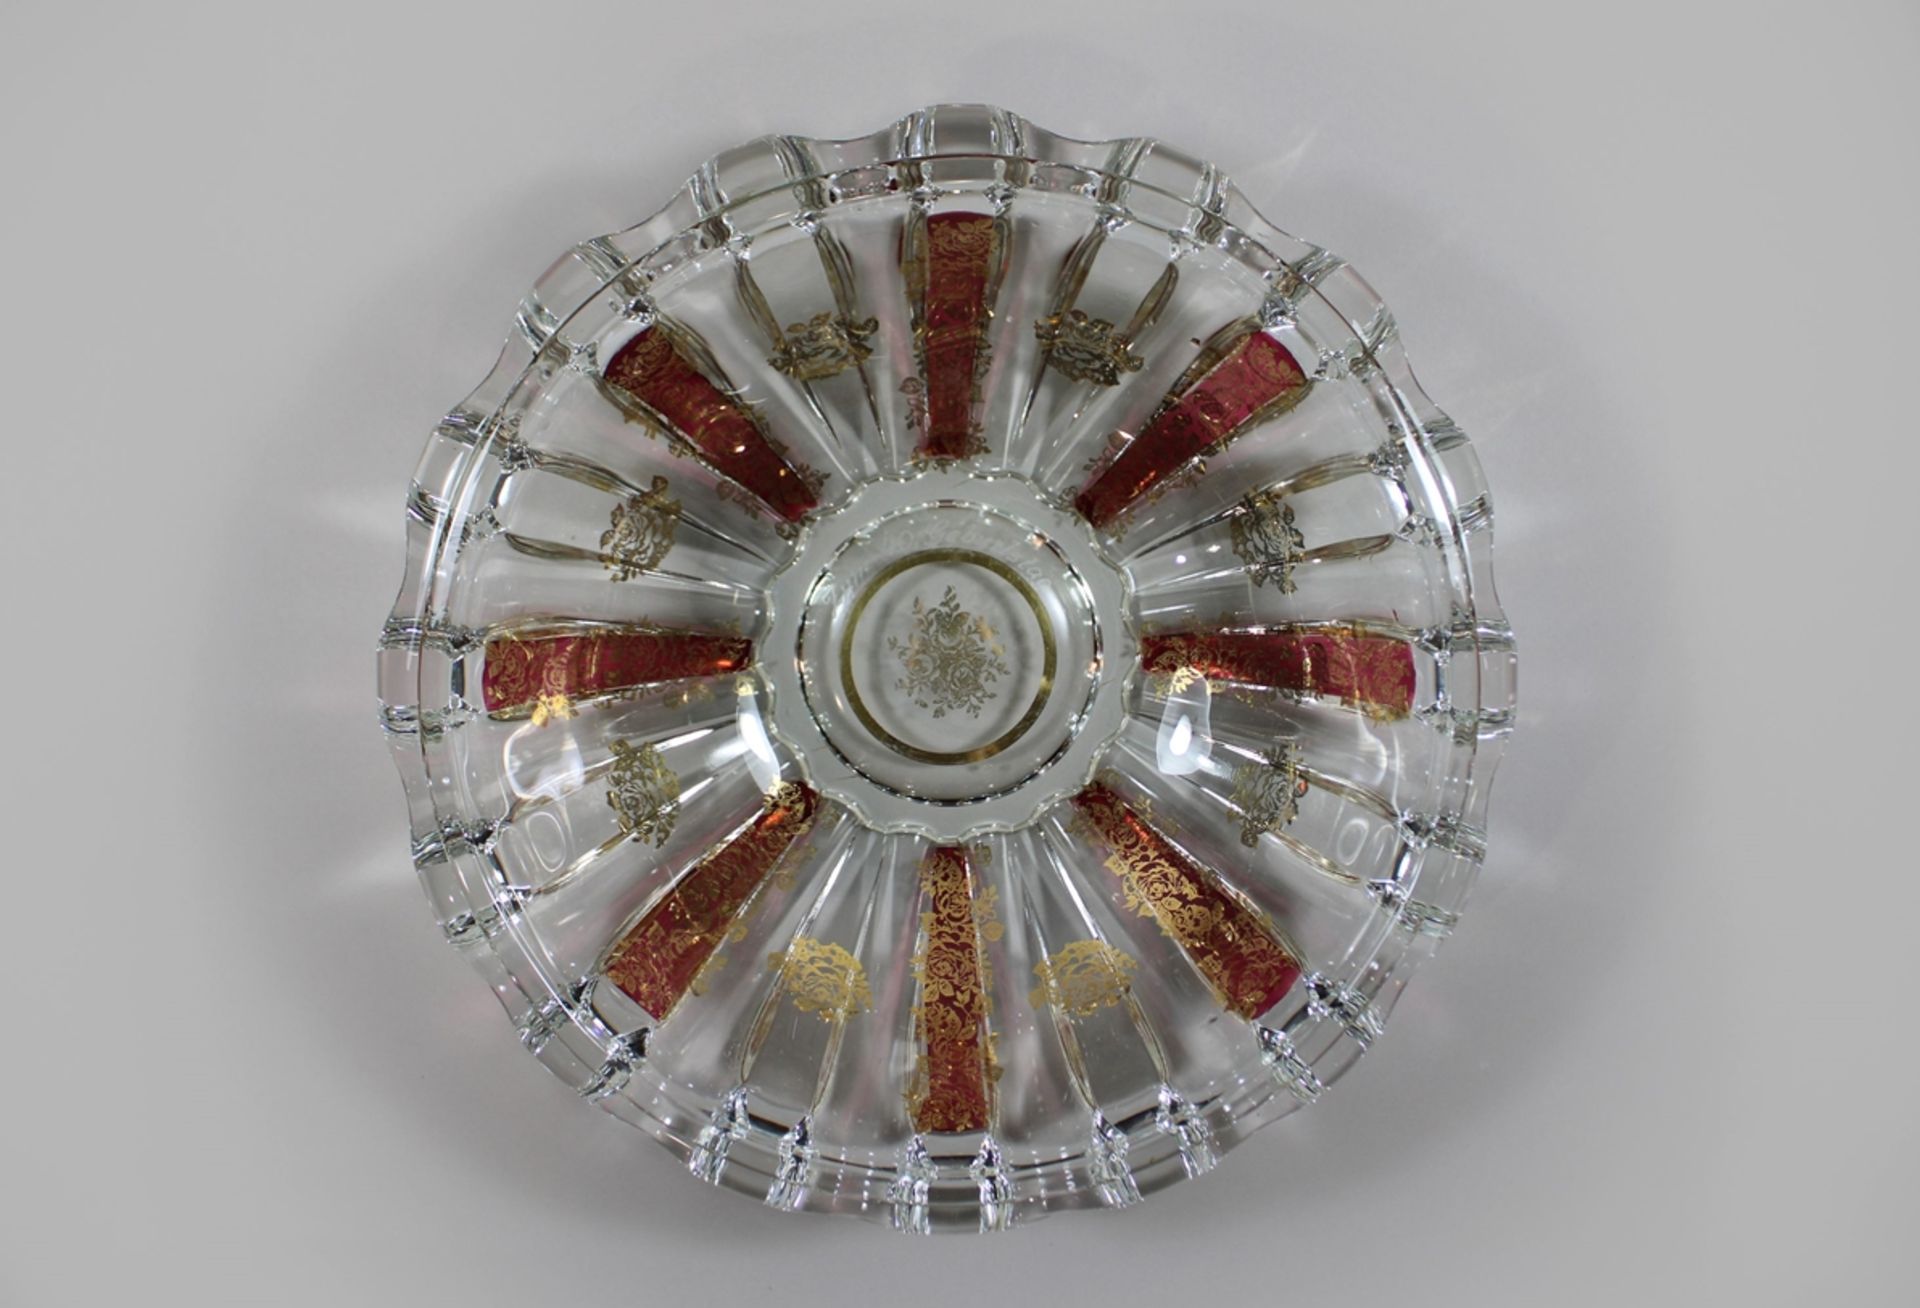 Böhmische Glasschale, rubinrot, Golddekor, Widmung, H.: 11 cm, Dm.: 36 cm. Guter, altersbedingter Z - Image 2 of 2